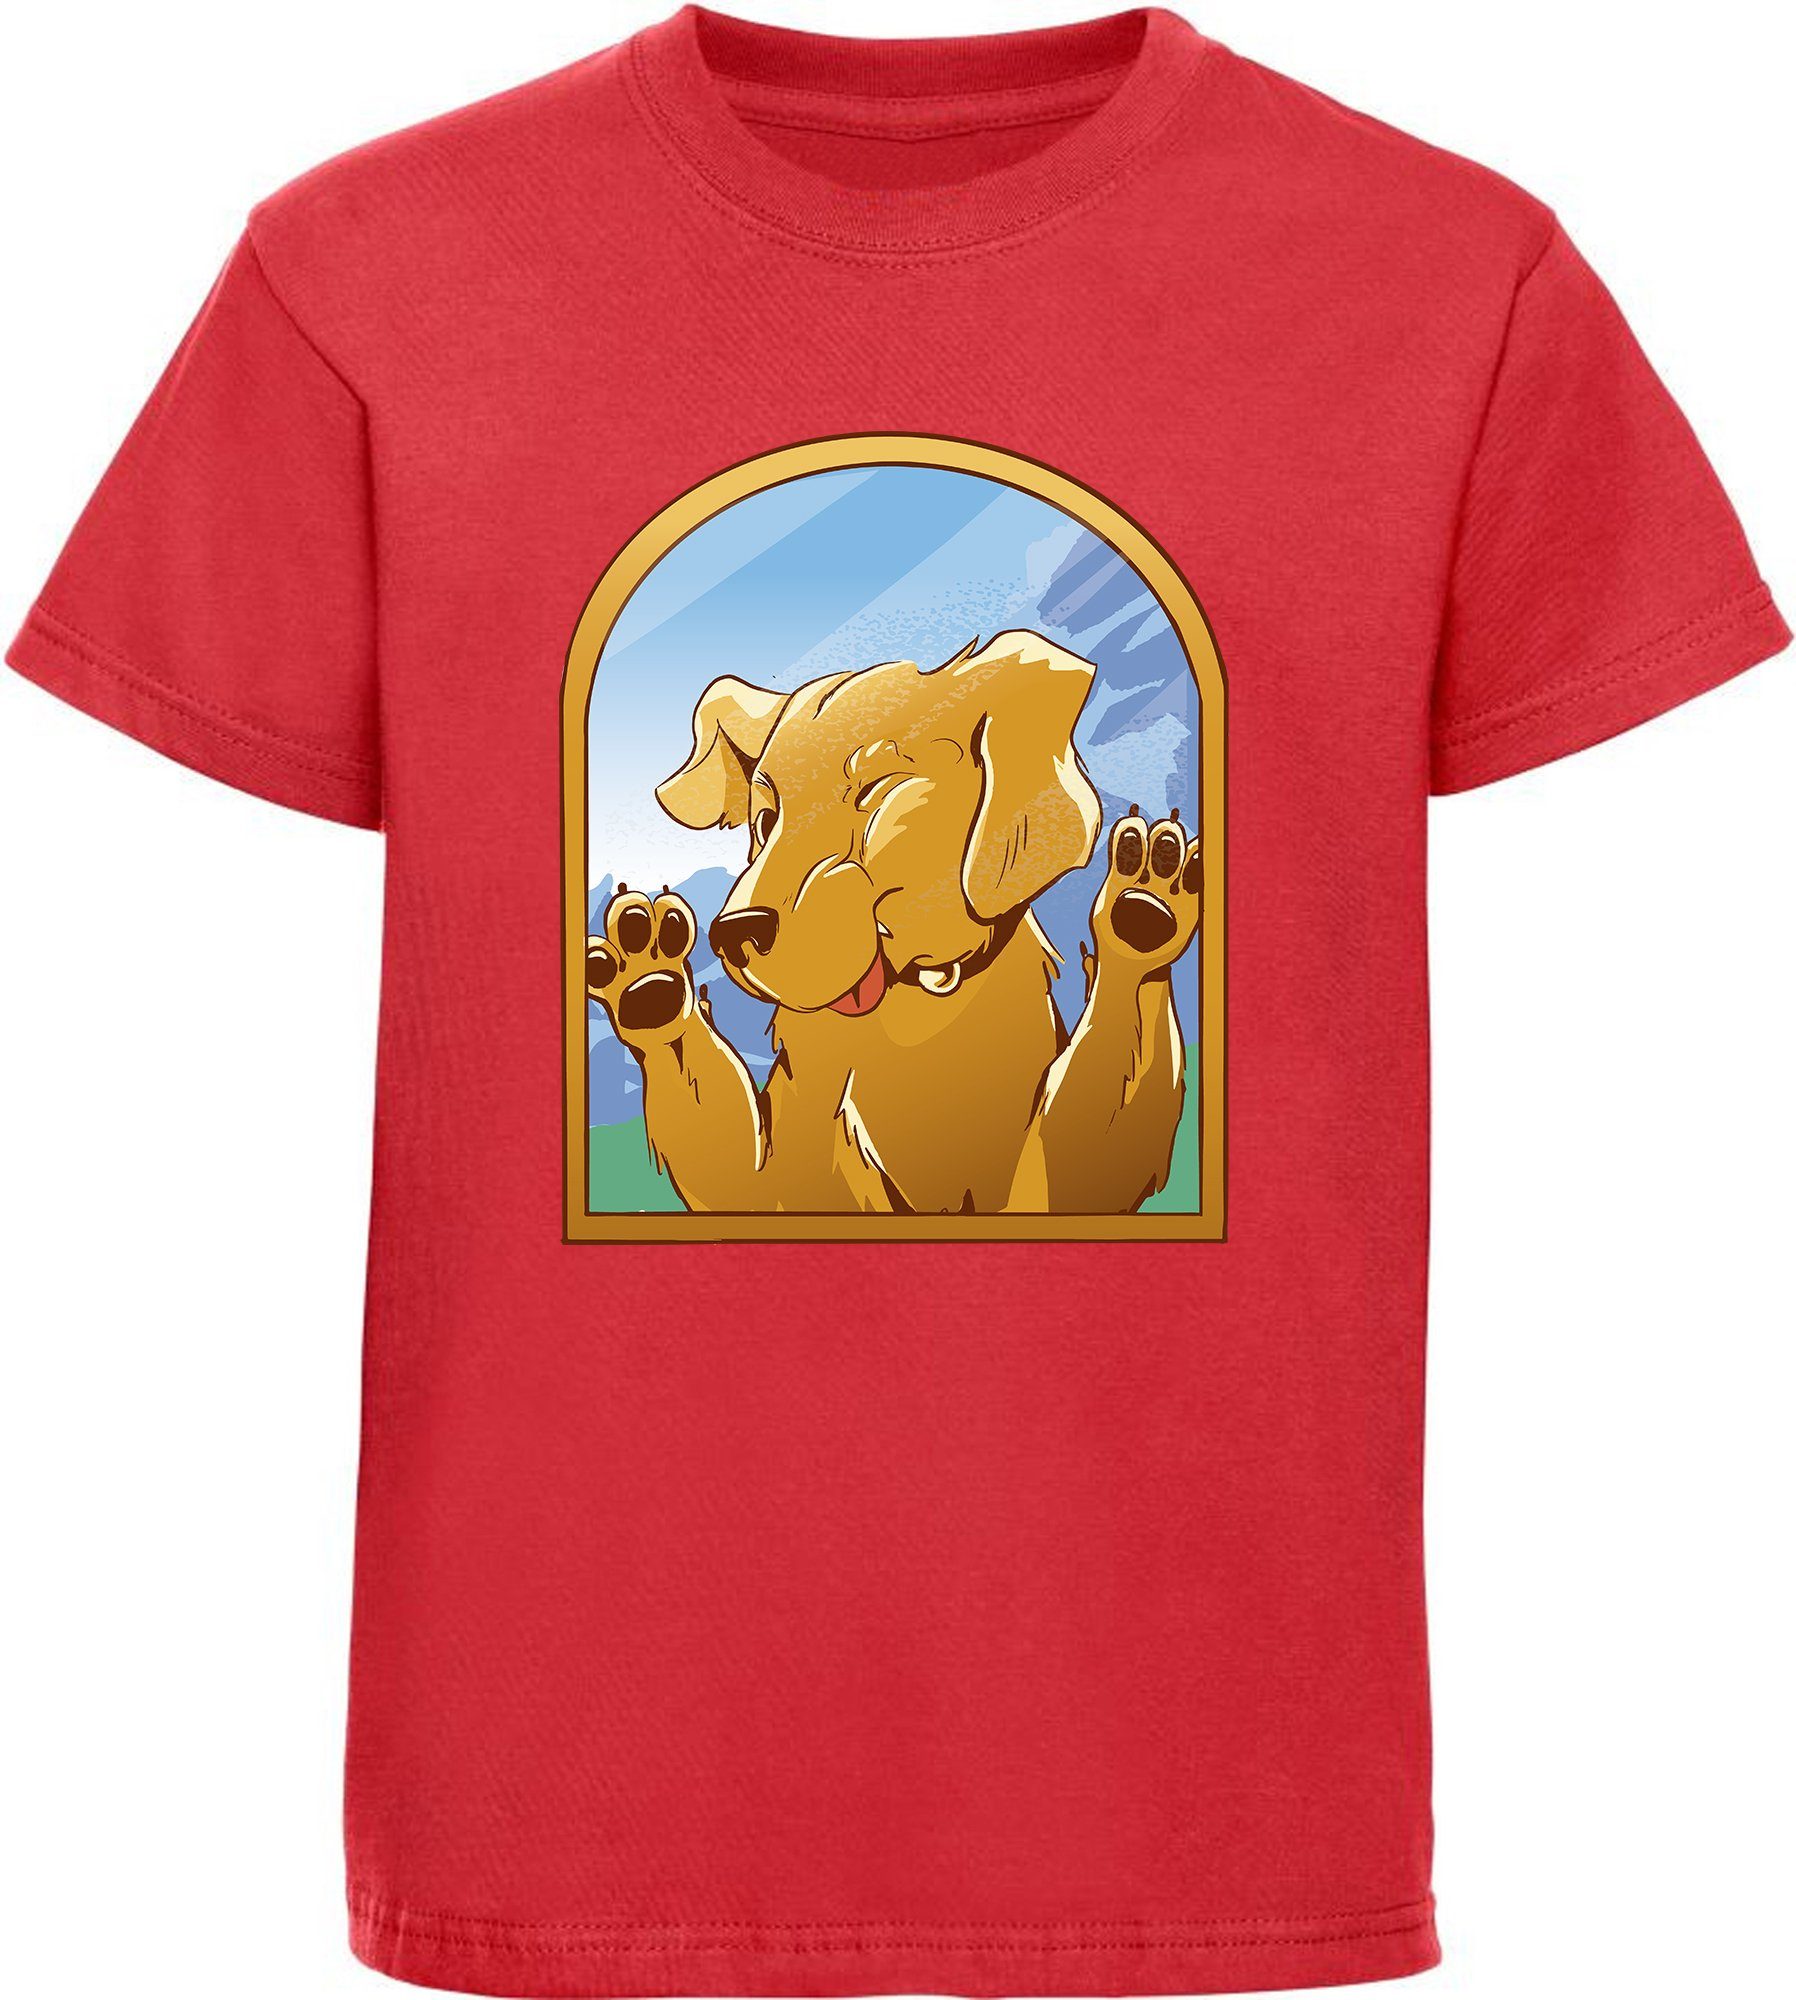 MyDesign24 Print-Shirt bedrucktes Kinder Hunde T-Shirt - Labrador gegen Fenster Baumwollshirt mit Aufdruck, i222 rot | T-Shirts